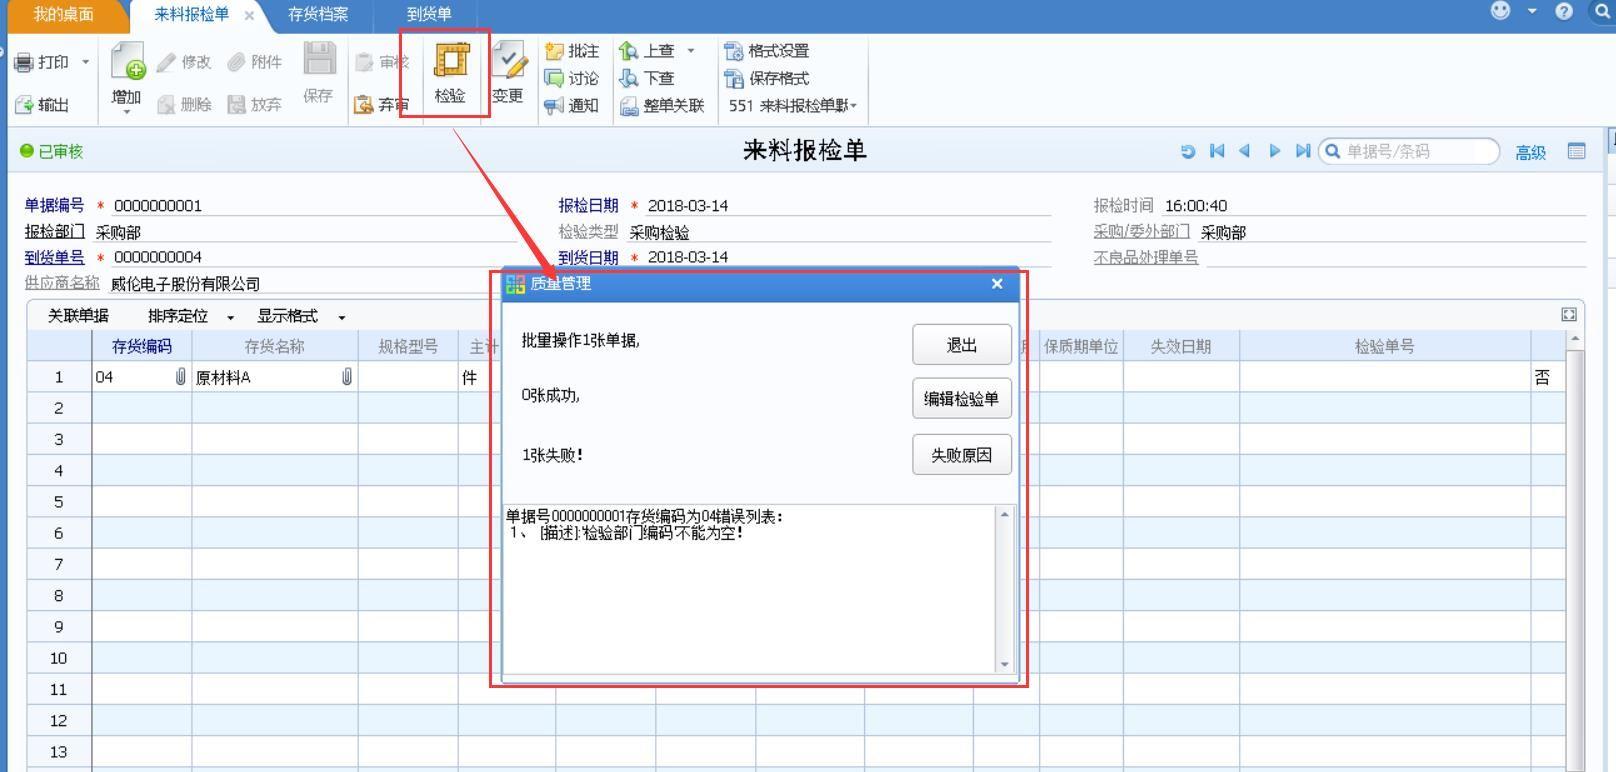 ae财务软件:金蝶财务软件订货操作流程